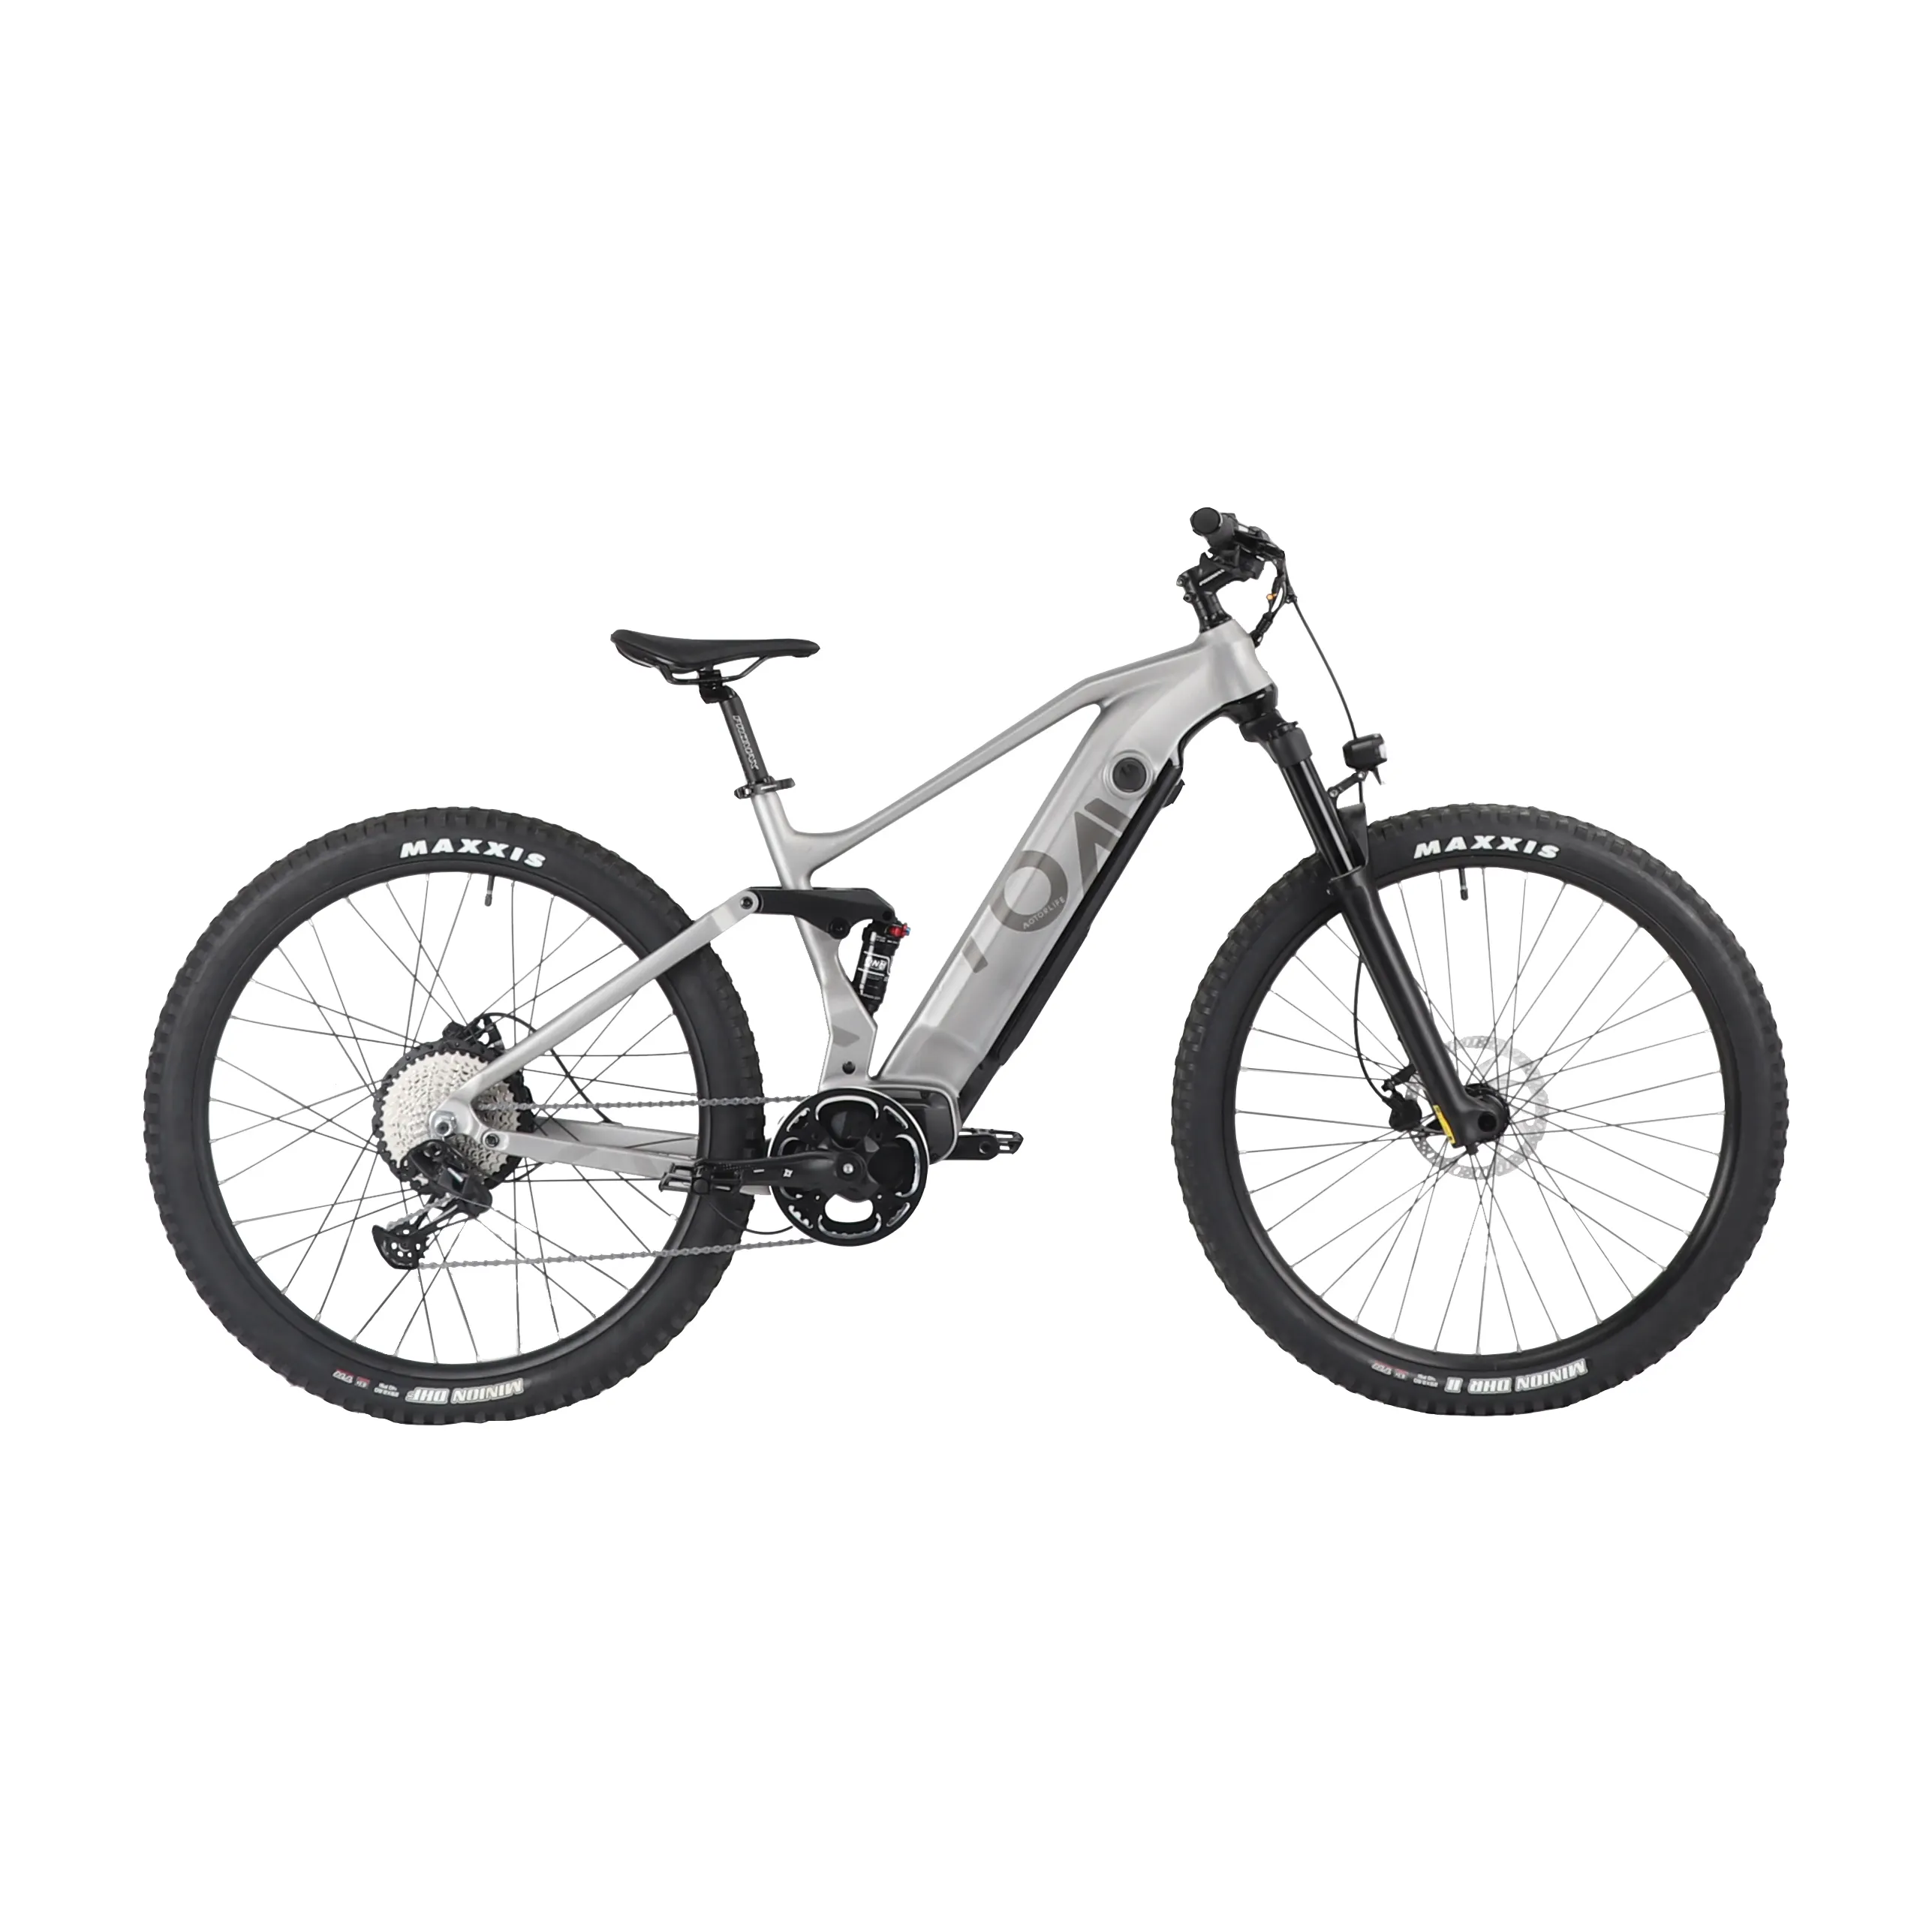 Motorlife-Bicicleta eléctrica de montaña con horquilla de suspensión neumática, e-bike de alta potencia de 52V, multiterreno, personalizada, muy vendida